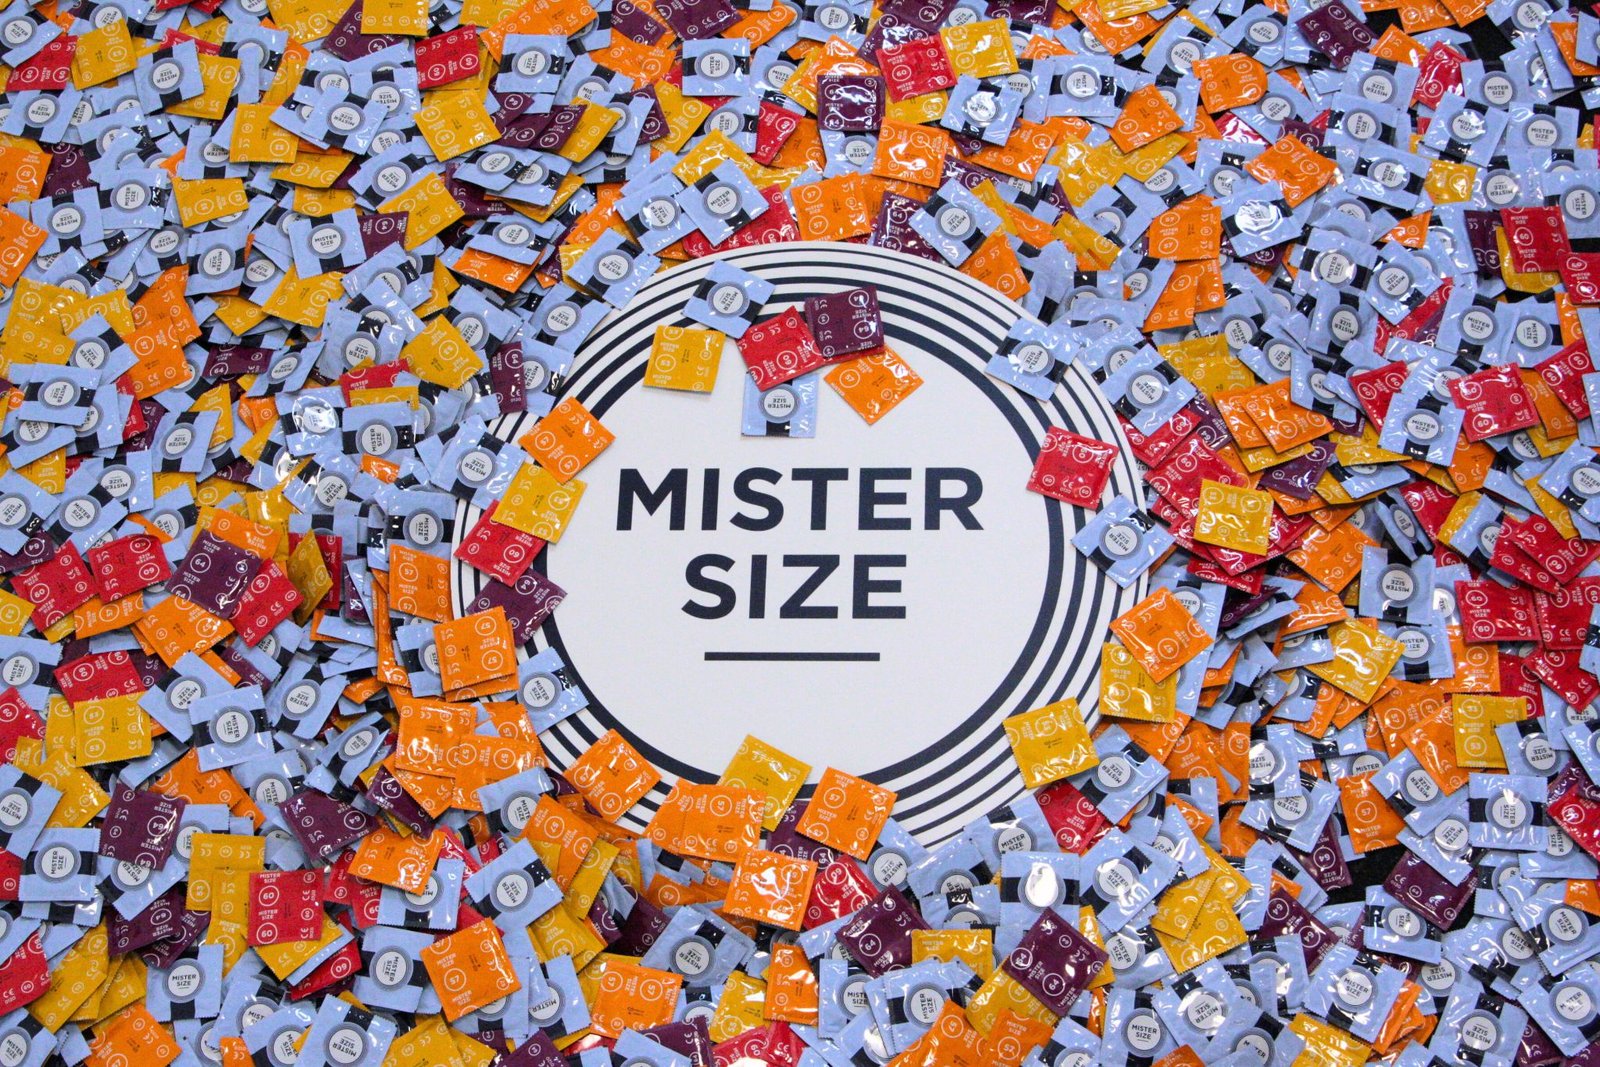 Skirtingi "Mister Size" prezervatyvai su skirtingais nominaliais pločiais